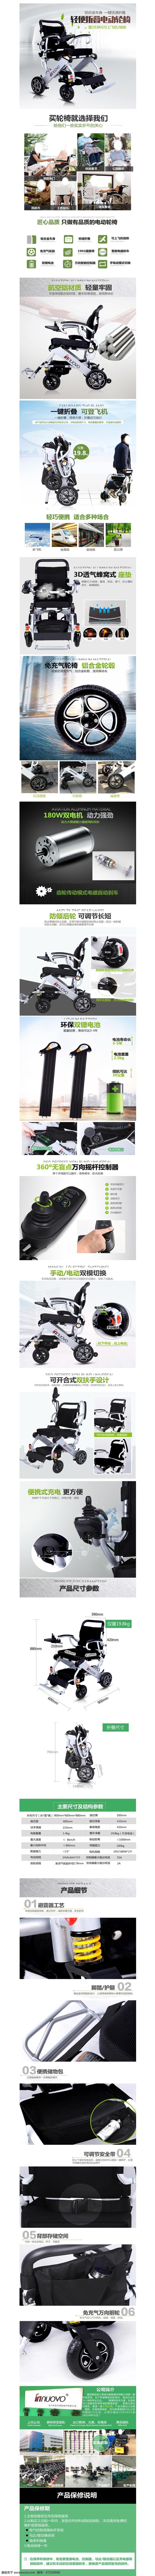 天猫 淘宝 京东 电动 轮椅 详情 模板 描述 老年人 残疾人 高端 大气 白色 绿色 页 医疗器械